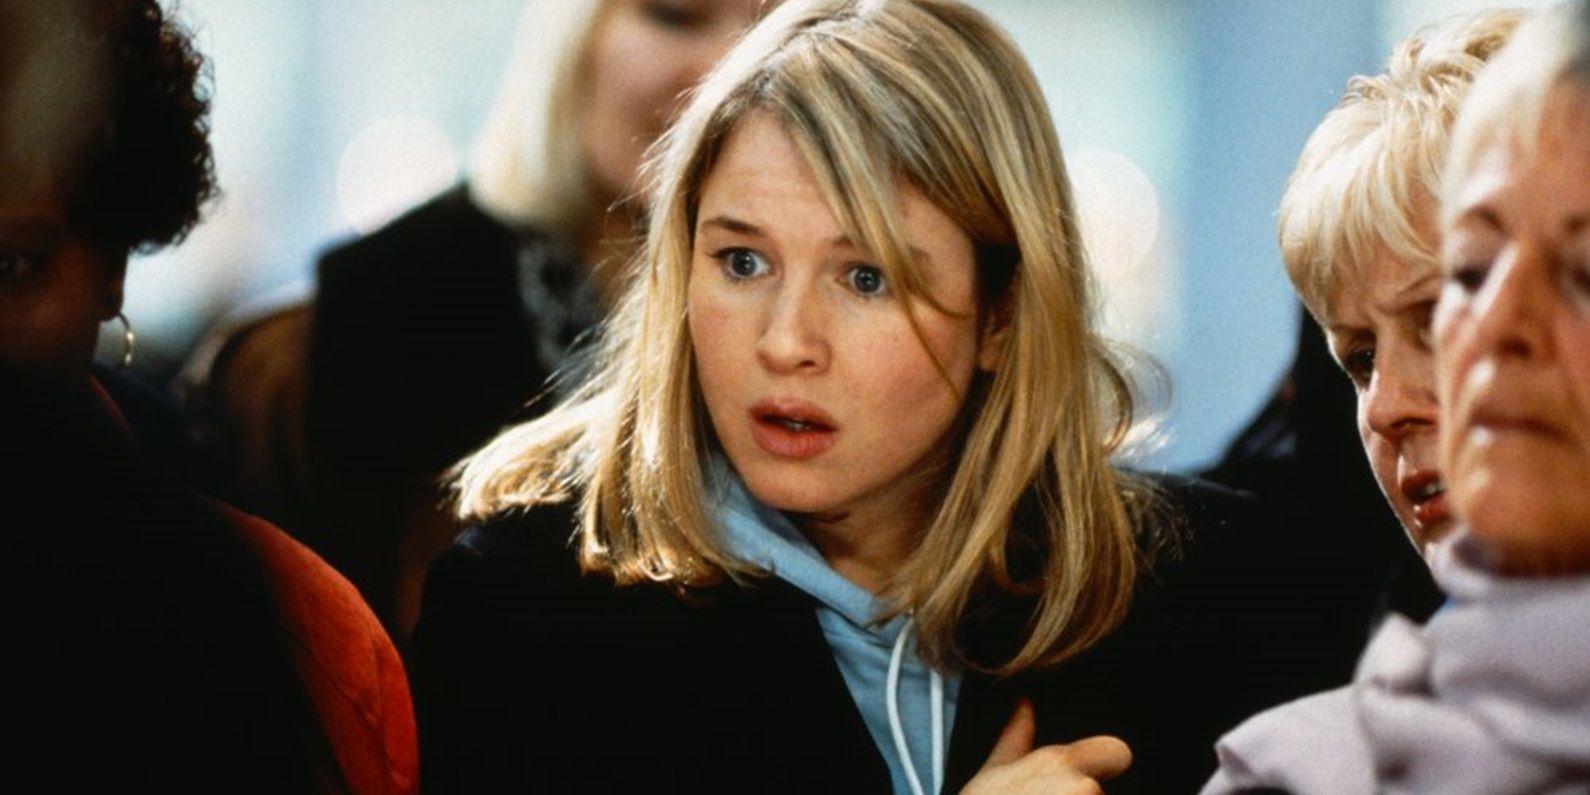 Renée Zellweger as Bridget Jones looking surprised in Bridget Jones’s Diary (2001)